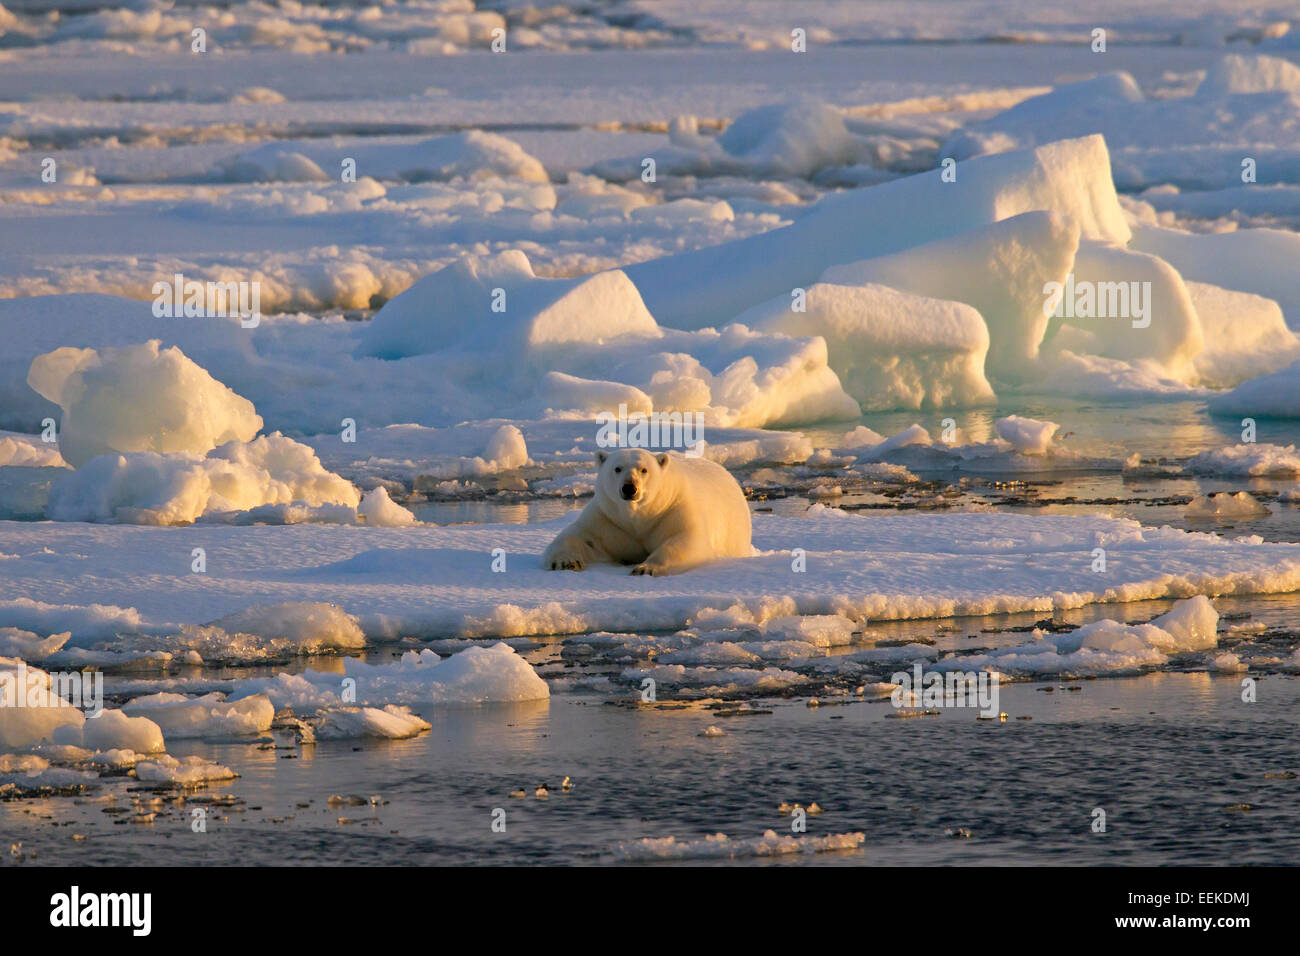 El oso polar (Ursus maritimus / Thalarctos maritimus) apoyado sobre bloques de hielo al atardecer, Svalbard, Noruega Foto de stock